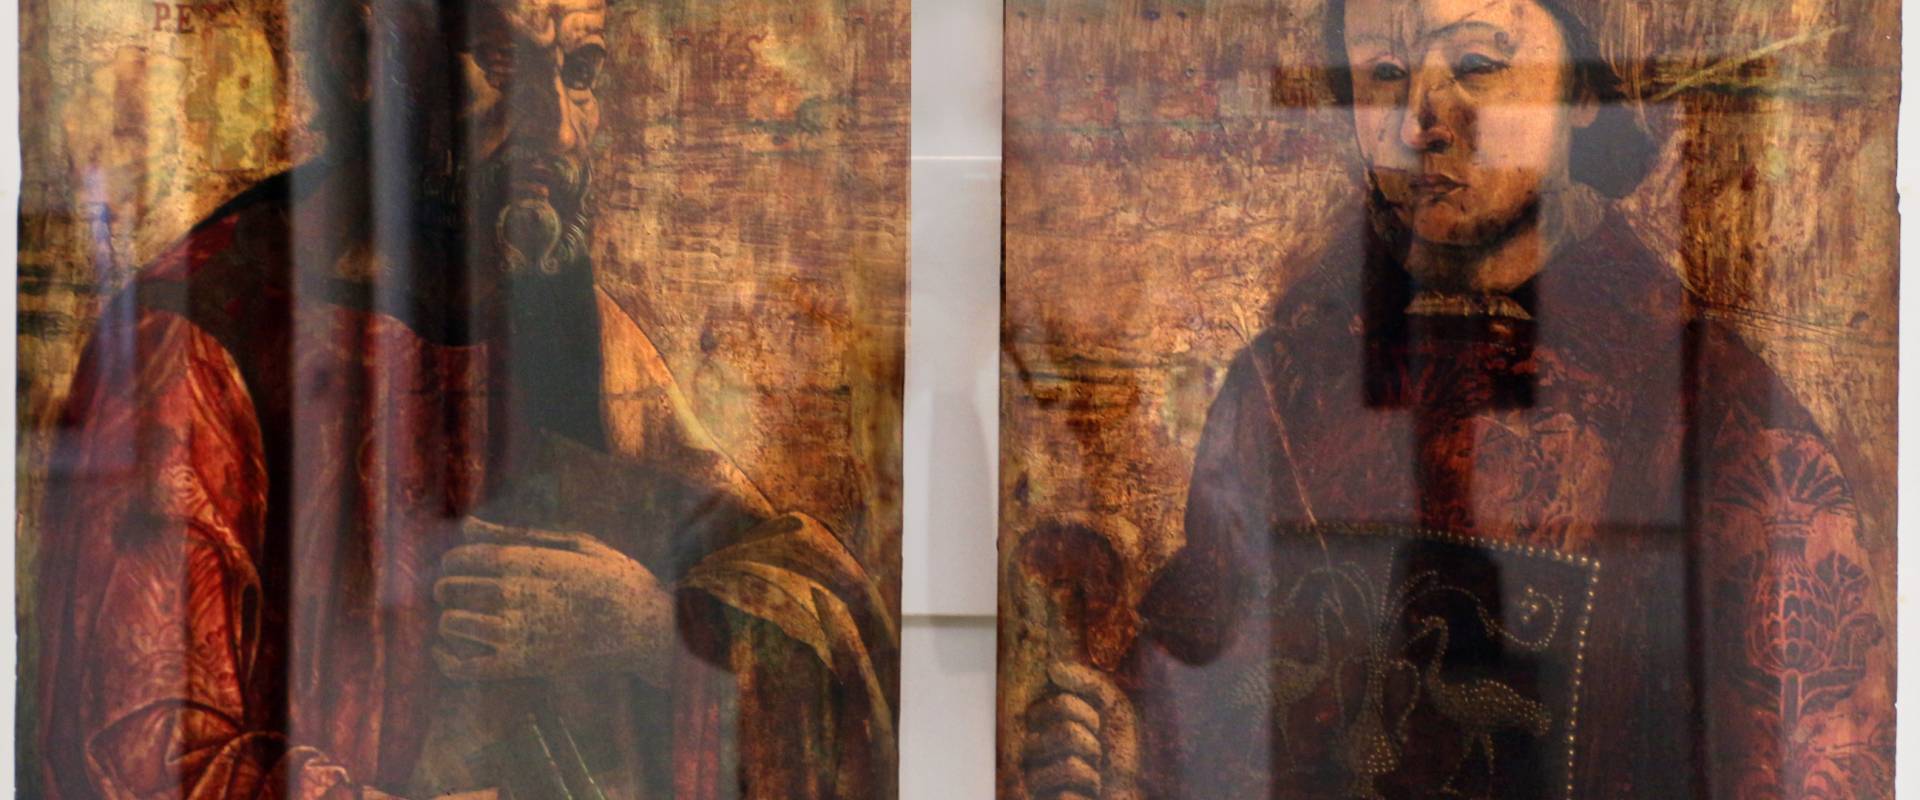 Artista veneto-emiliano, ss. pietro e lorenzo, xv secolo foto di Sailko